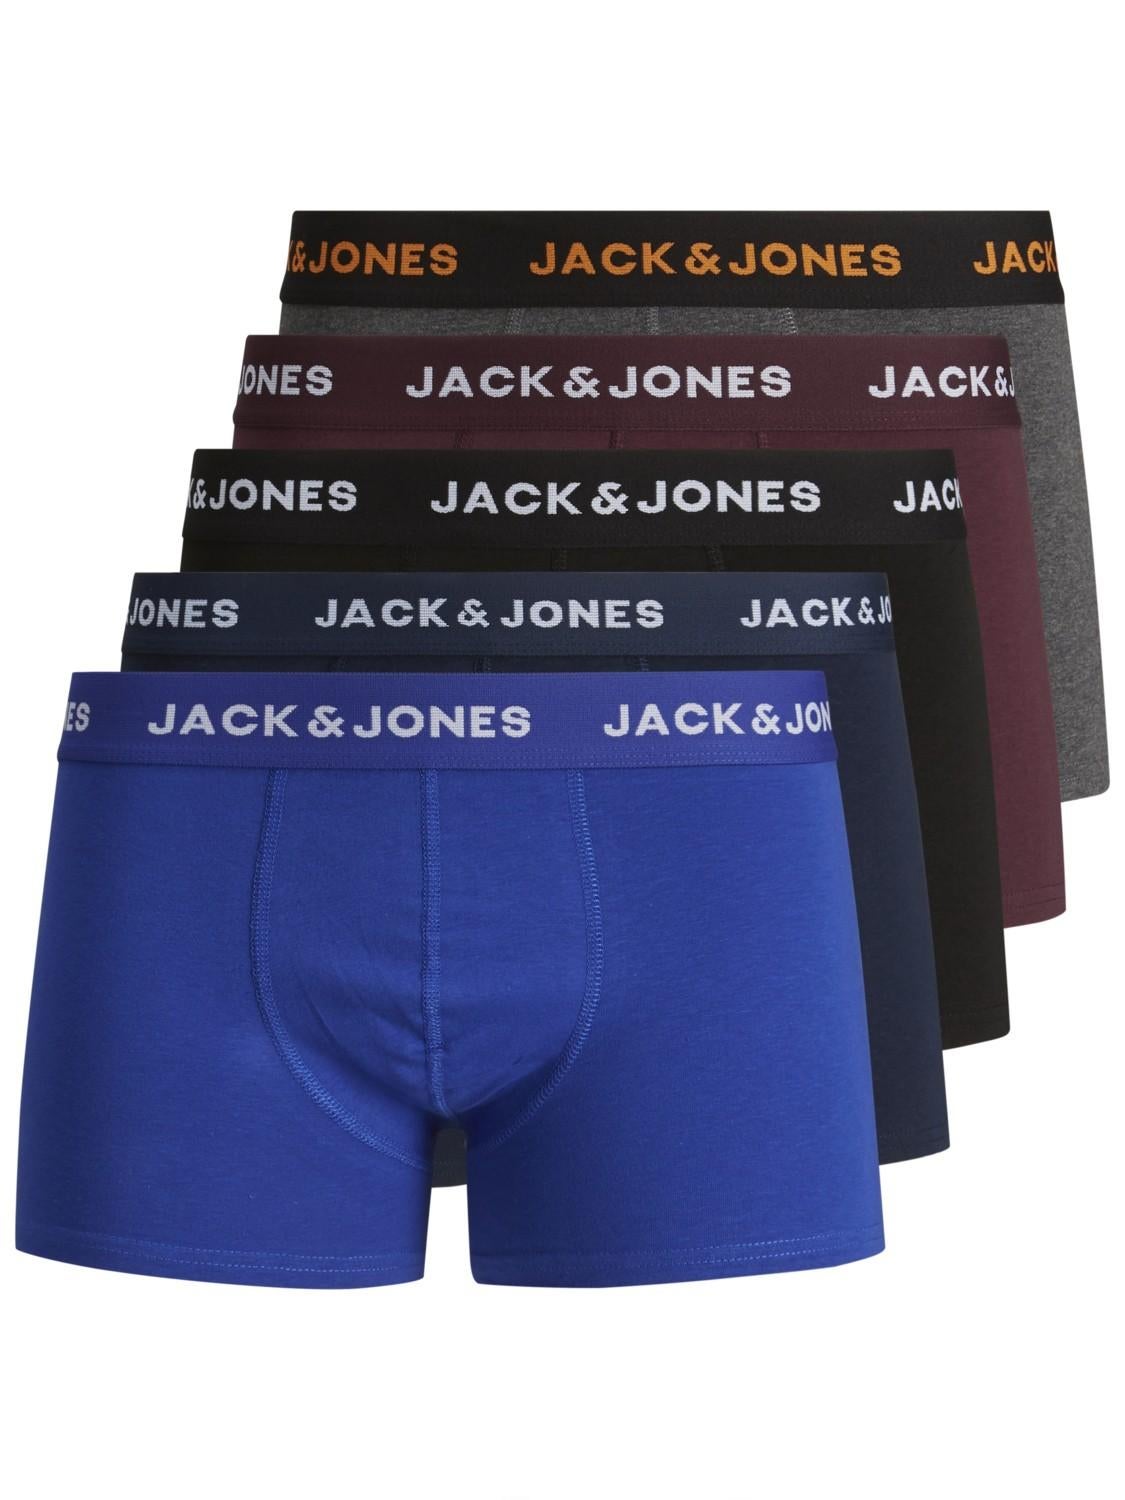 Jack & Jones Boxers Jacbasic Trunks X7 in het Zwart voor heren Heren Kleding voor voor Strandkleding voor Strandlakens 